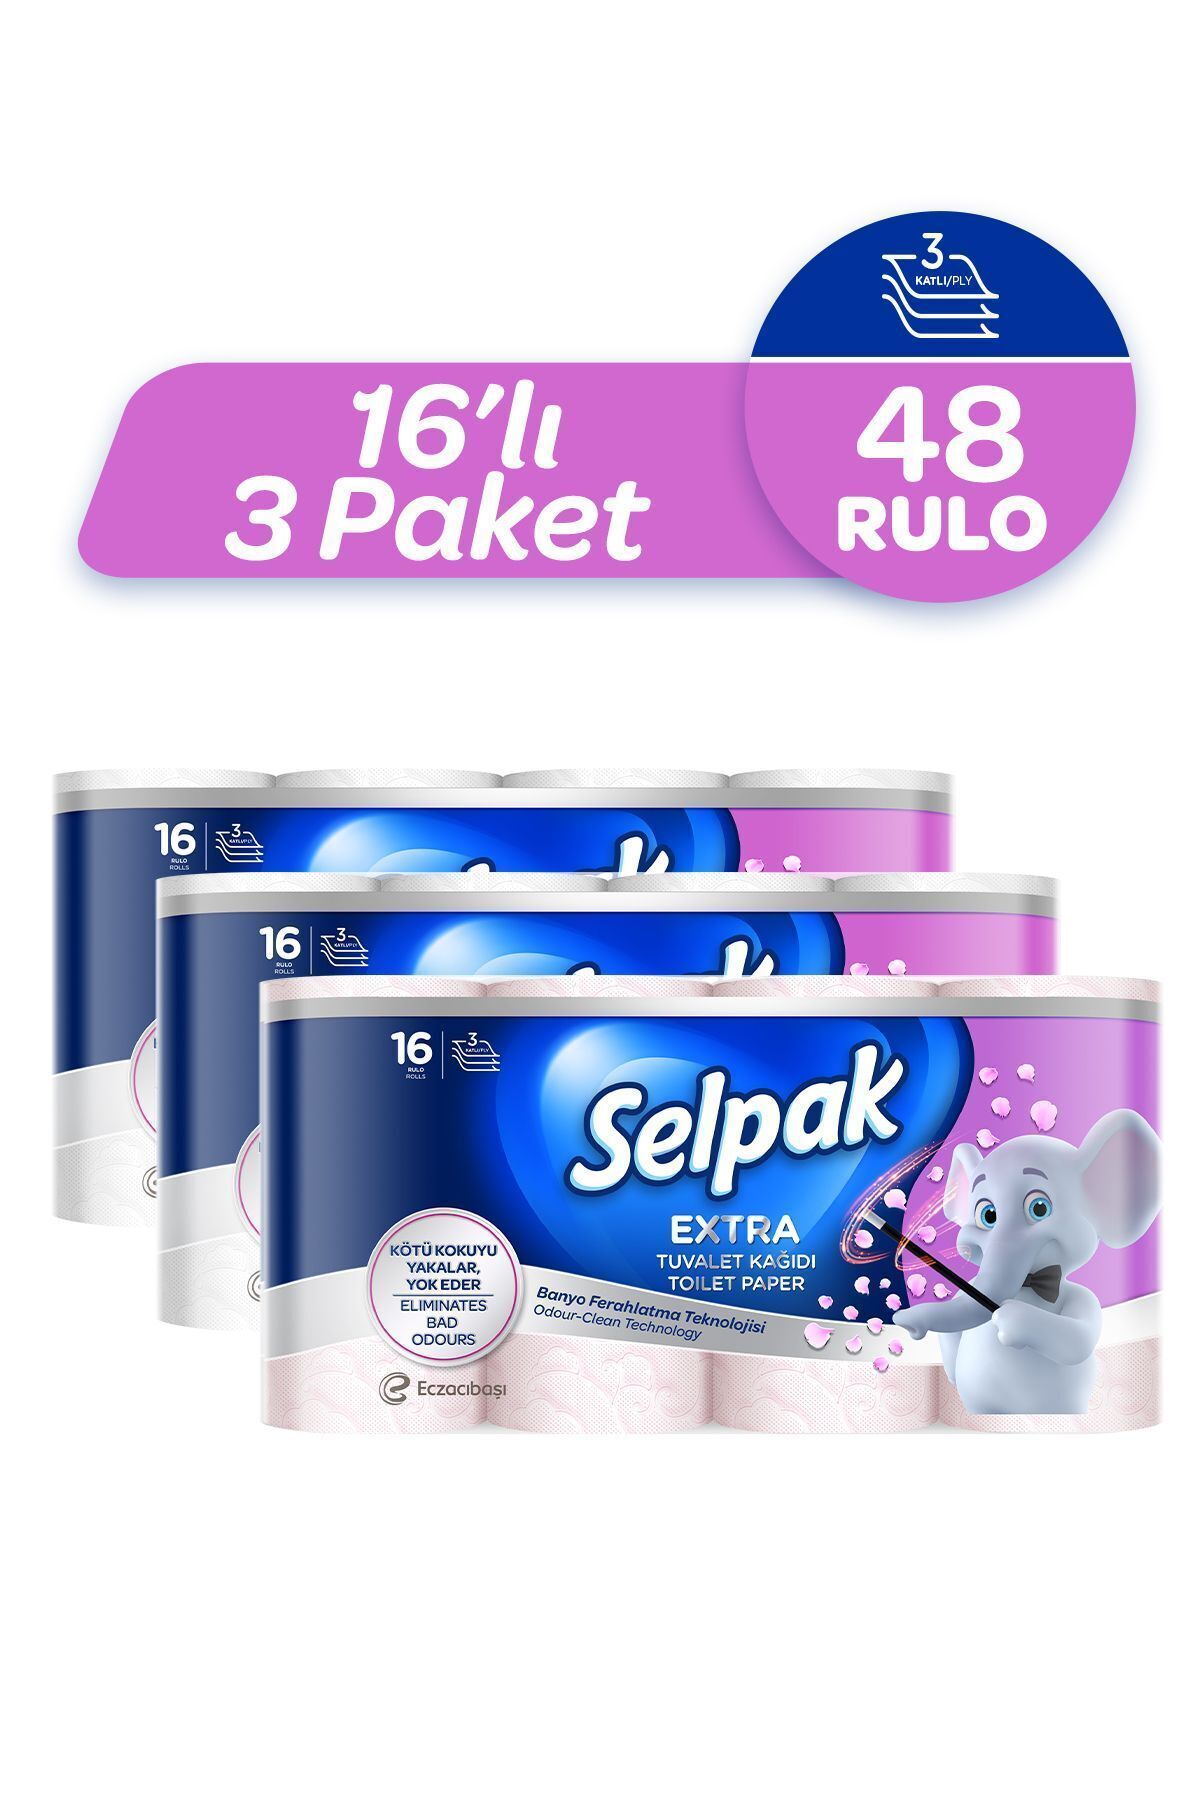 Selpak ® Extra Tuvalet Kağıdı Banyo Ferahlatma 48'li